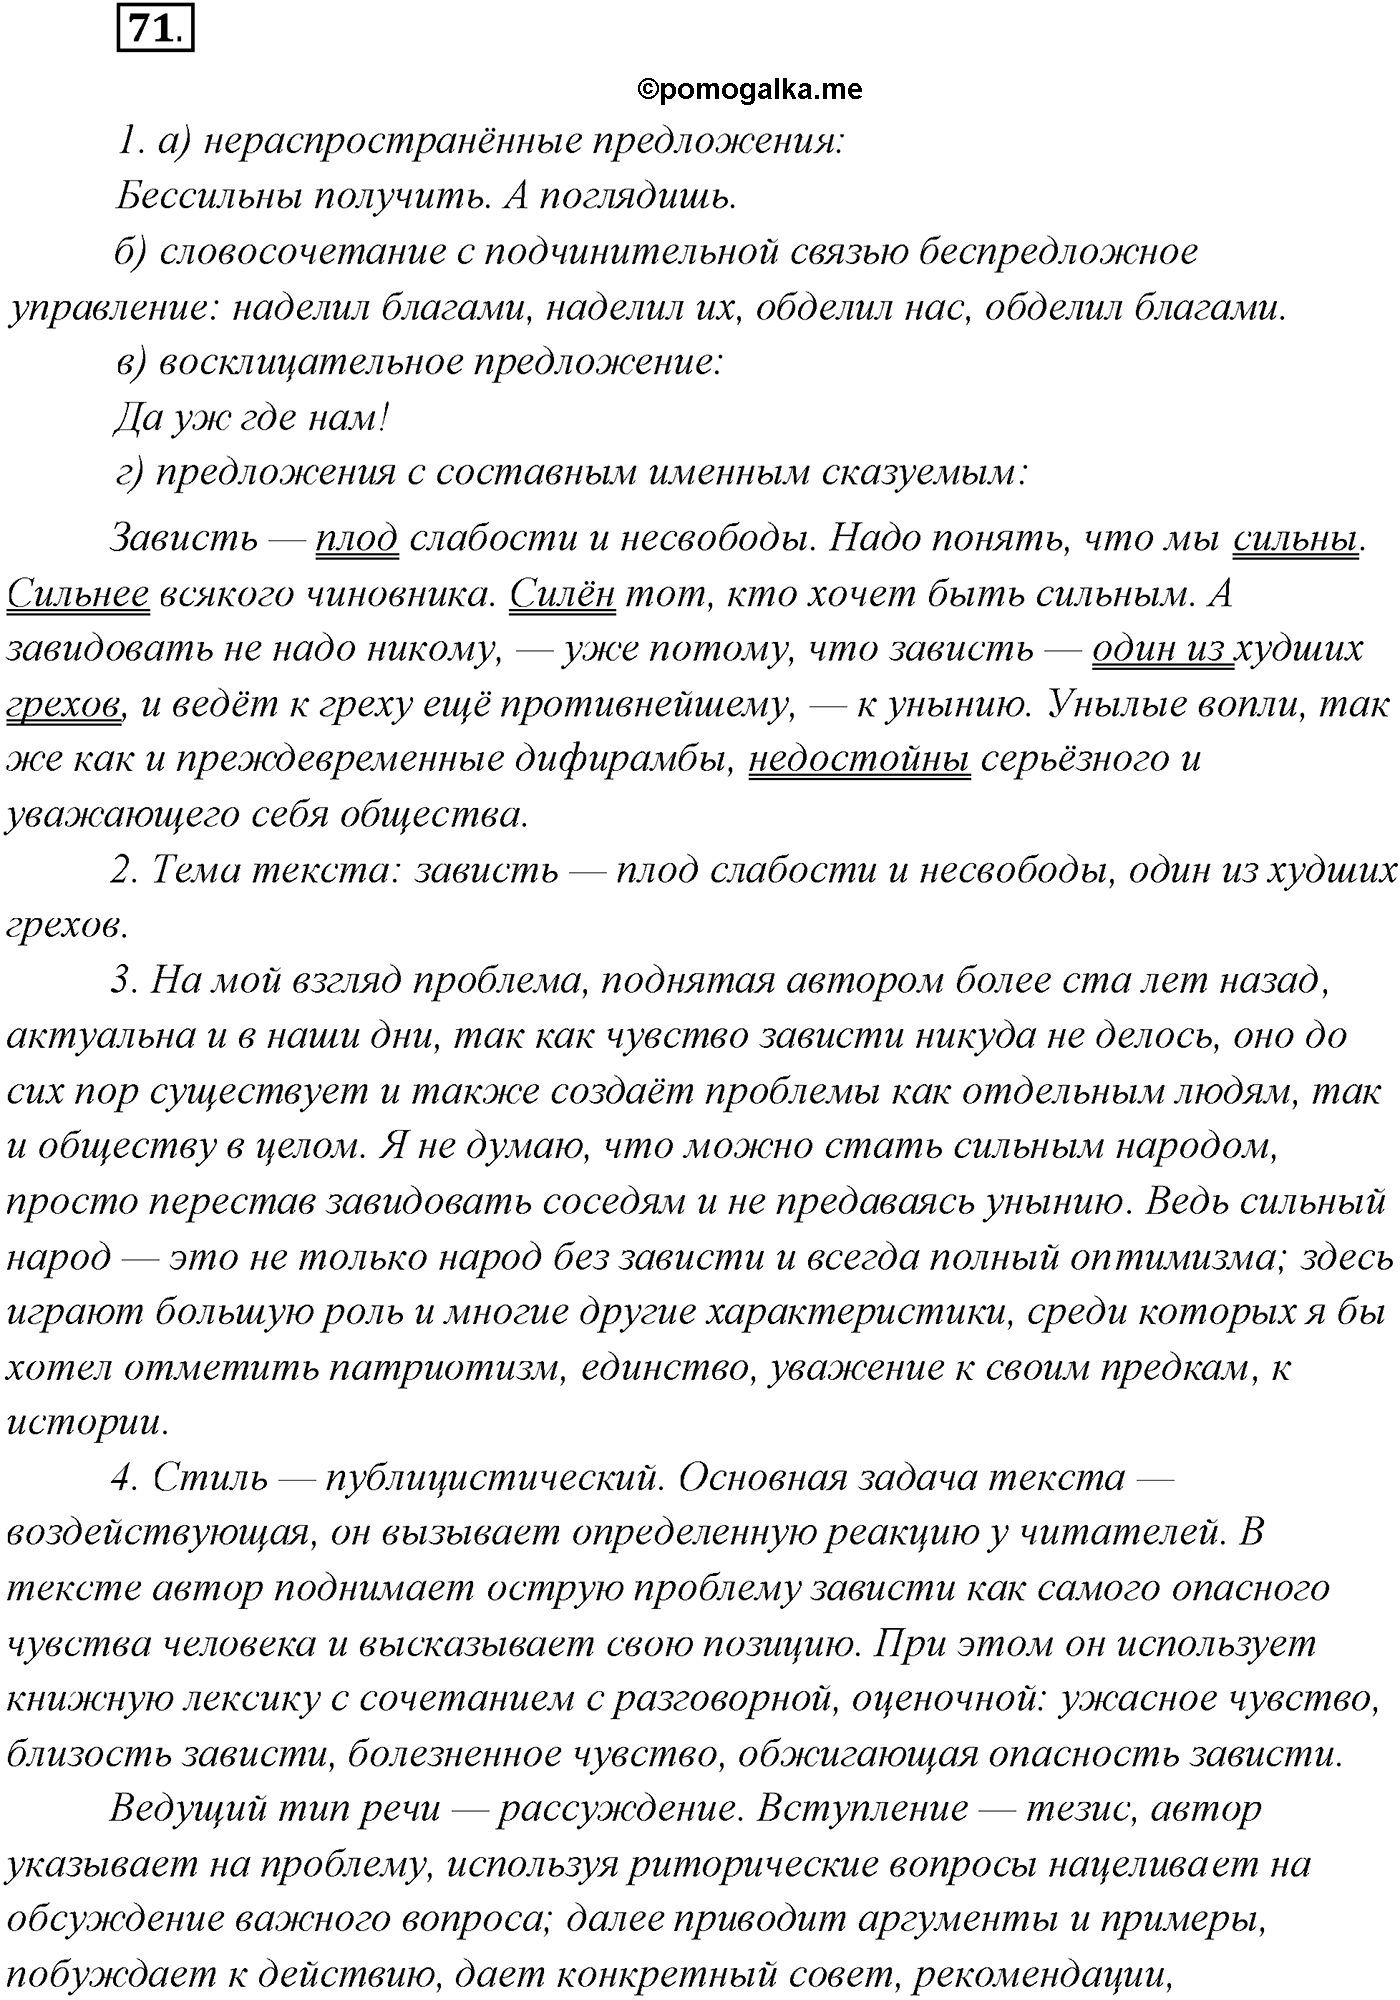 упражнение №71 русский язык 10 класс Гусарова 2021 год